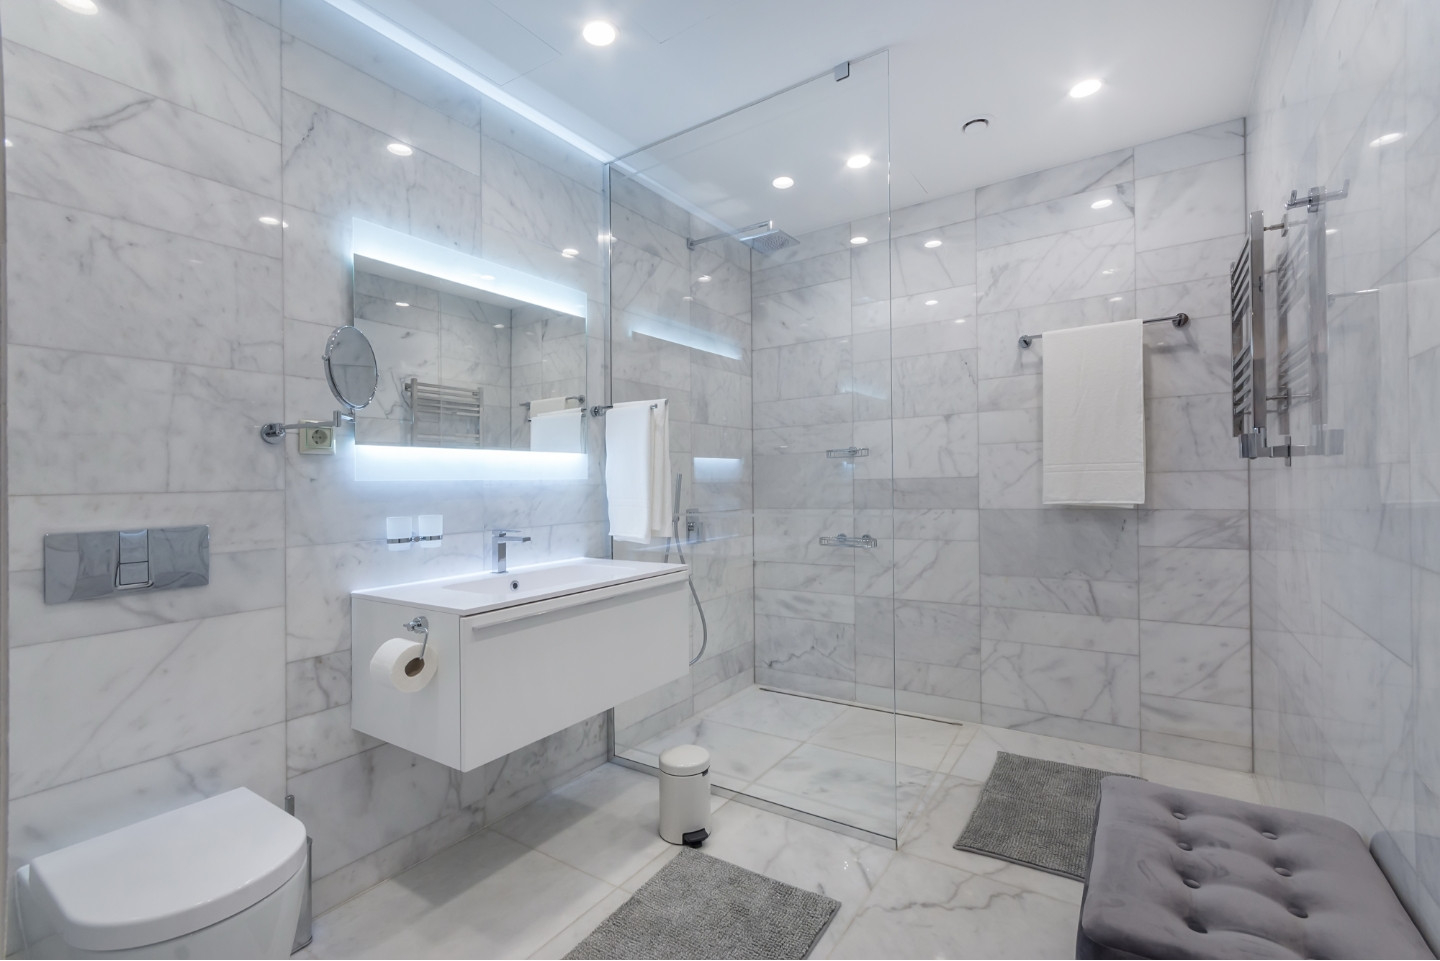 Deckenbeleuchtung – Badezimmer: Inspiration &amp; Tipps | Obi inside Decke Badezimmer